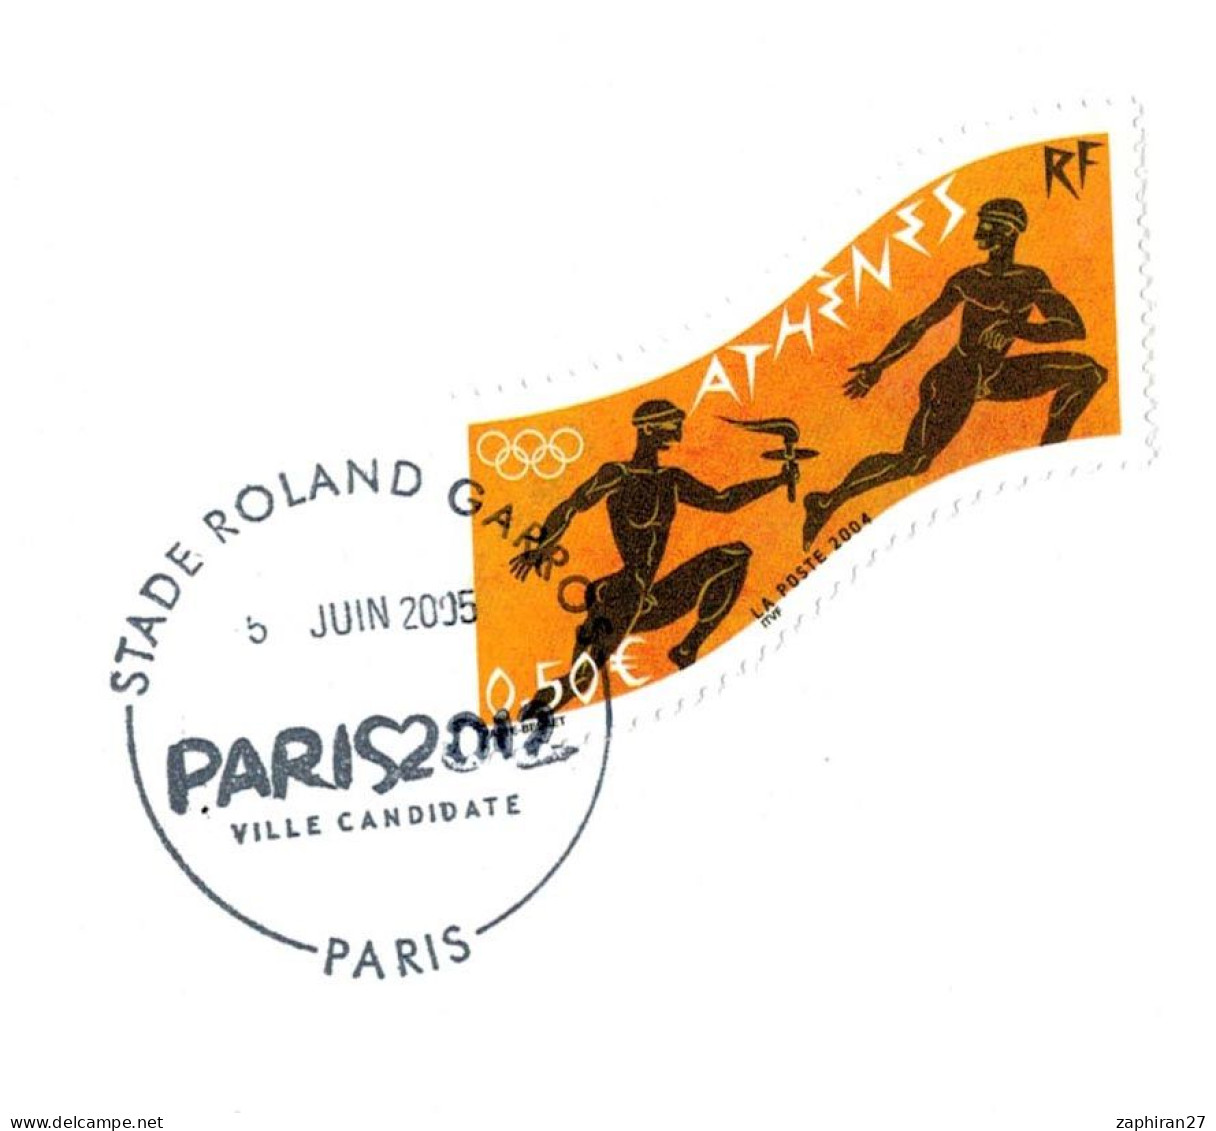 JEUX OLYMPIQUES PARIS 2012 STADE ROLAND GARROS VILLE CANDIDATE (5-6-2005) #462# - Summer 2012: London